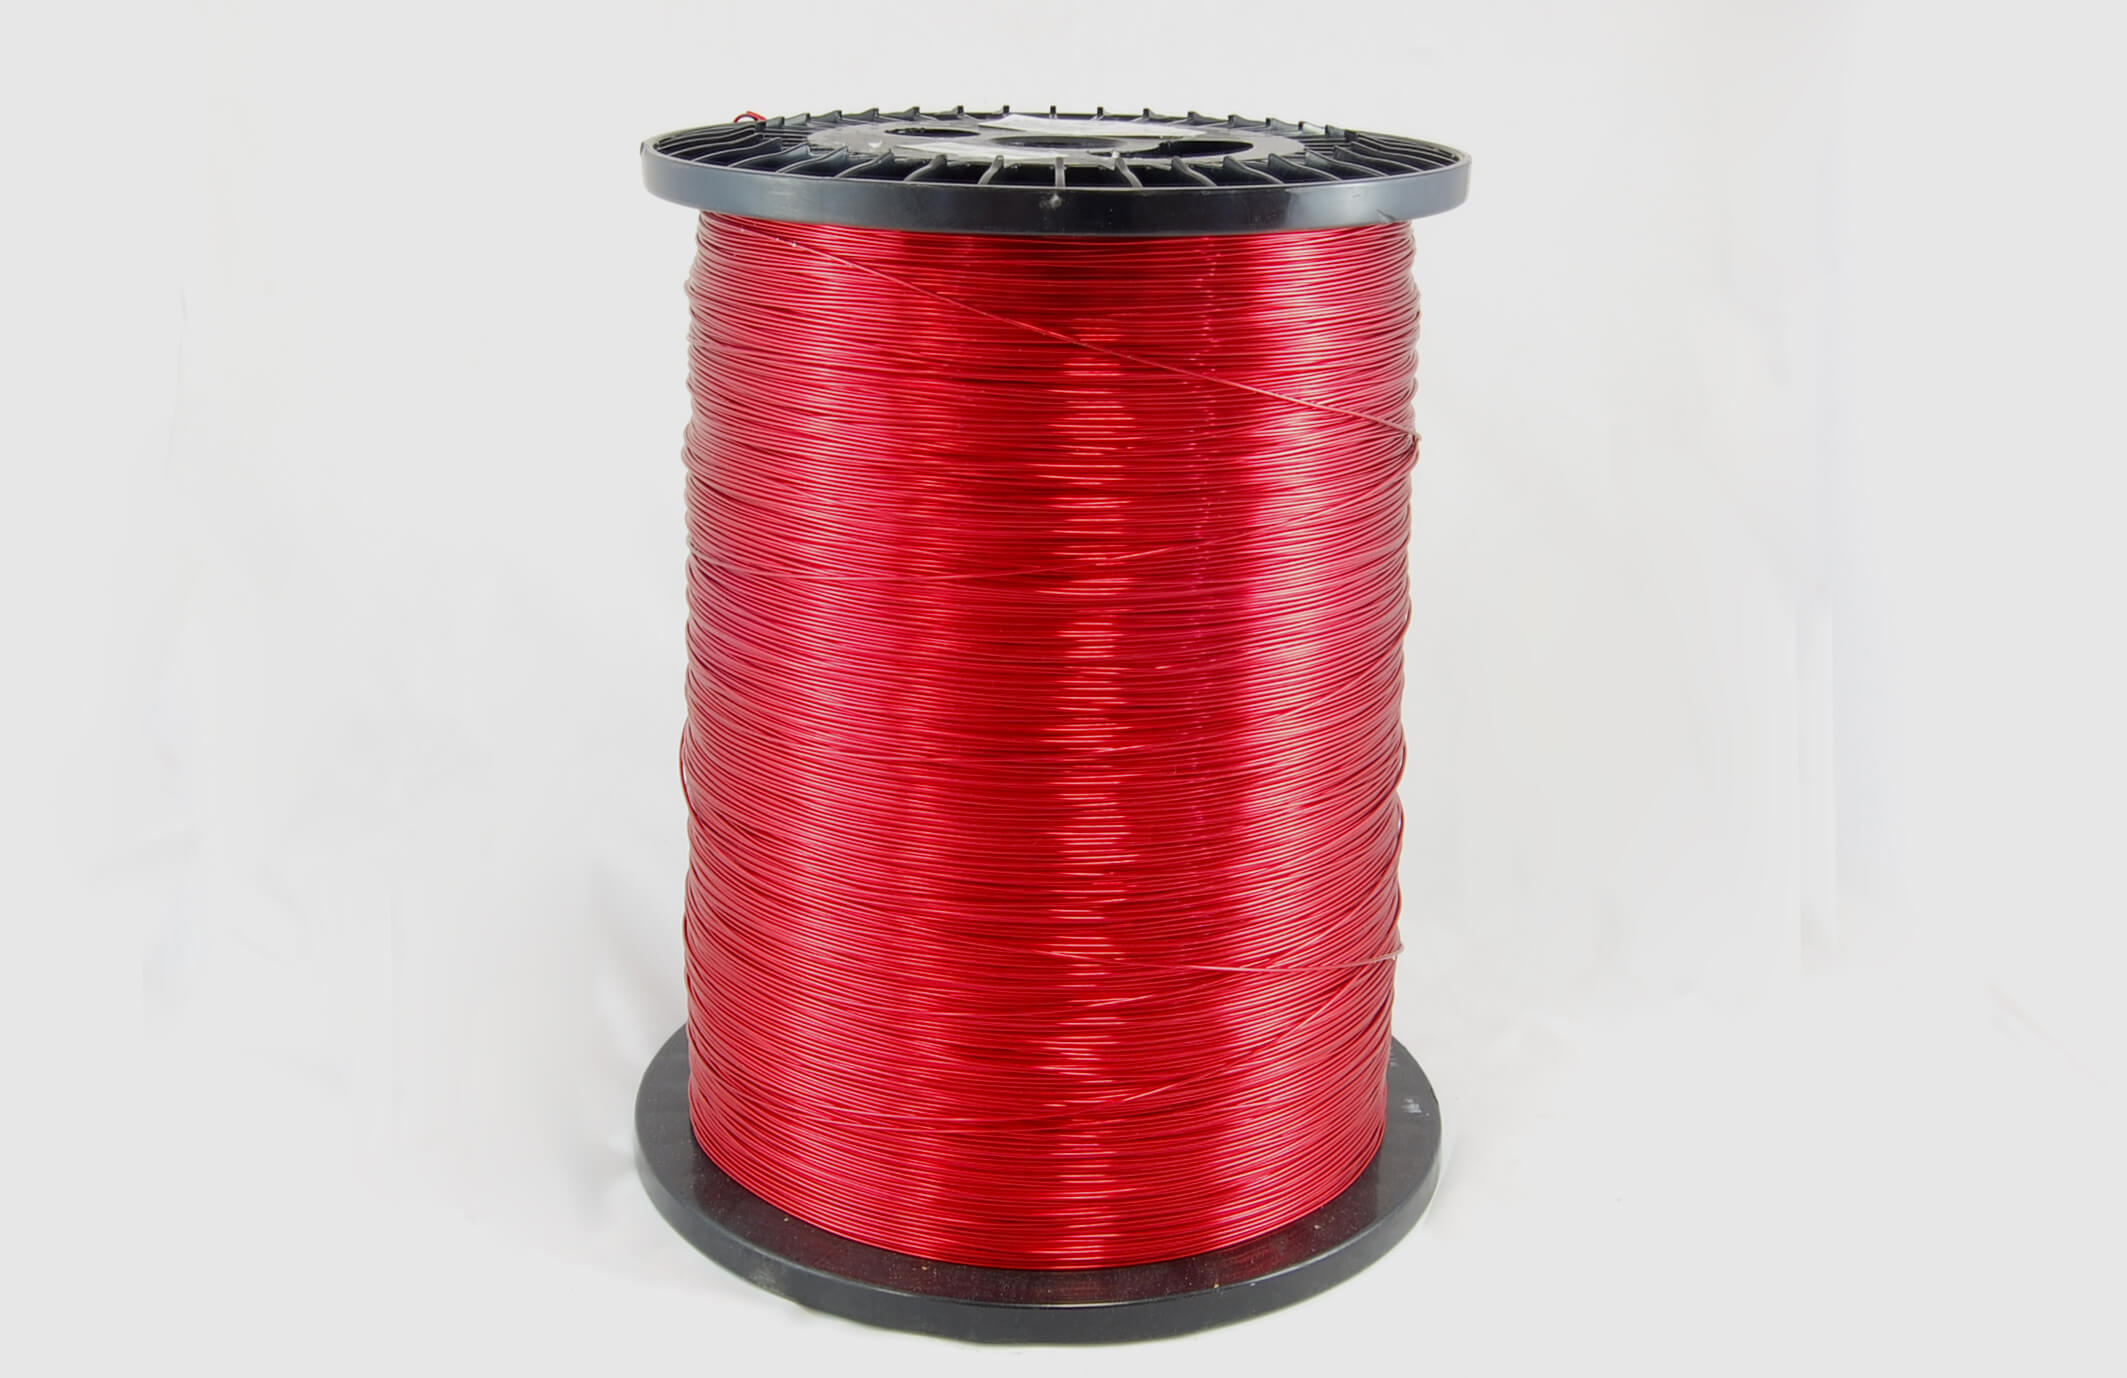 #26 Single Nysol  Round SNSR MW 80 Copper Magnet Wire 155°C, red, 85 LB box (average wght.)